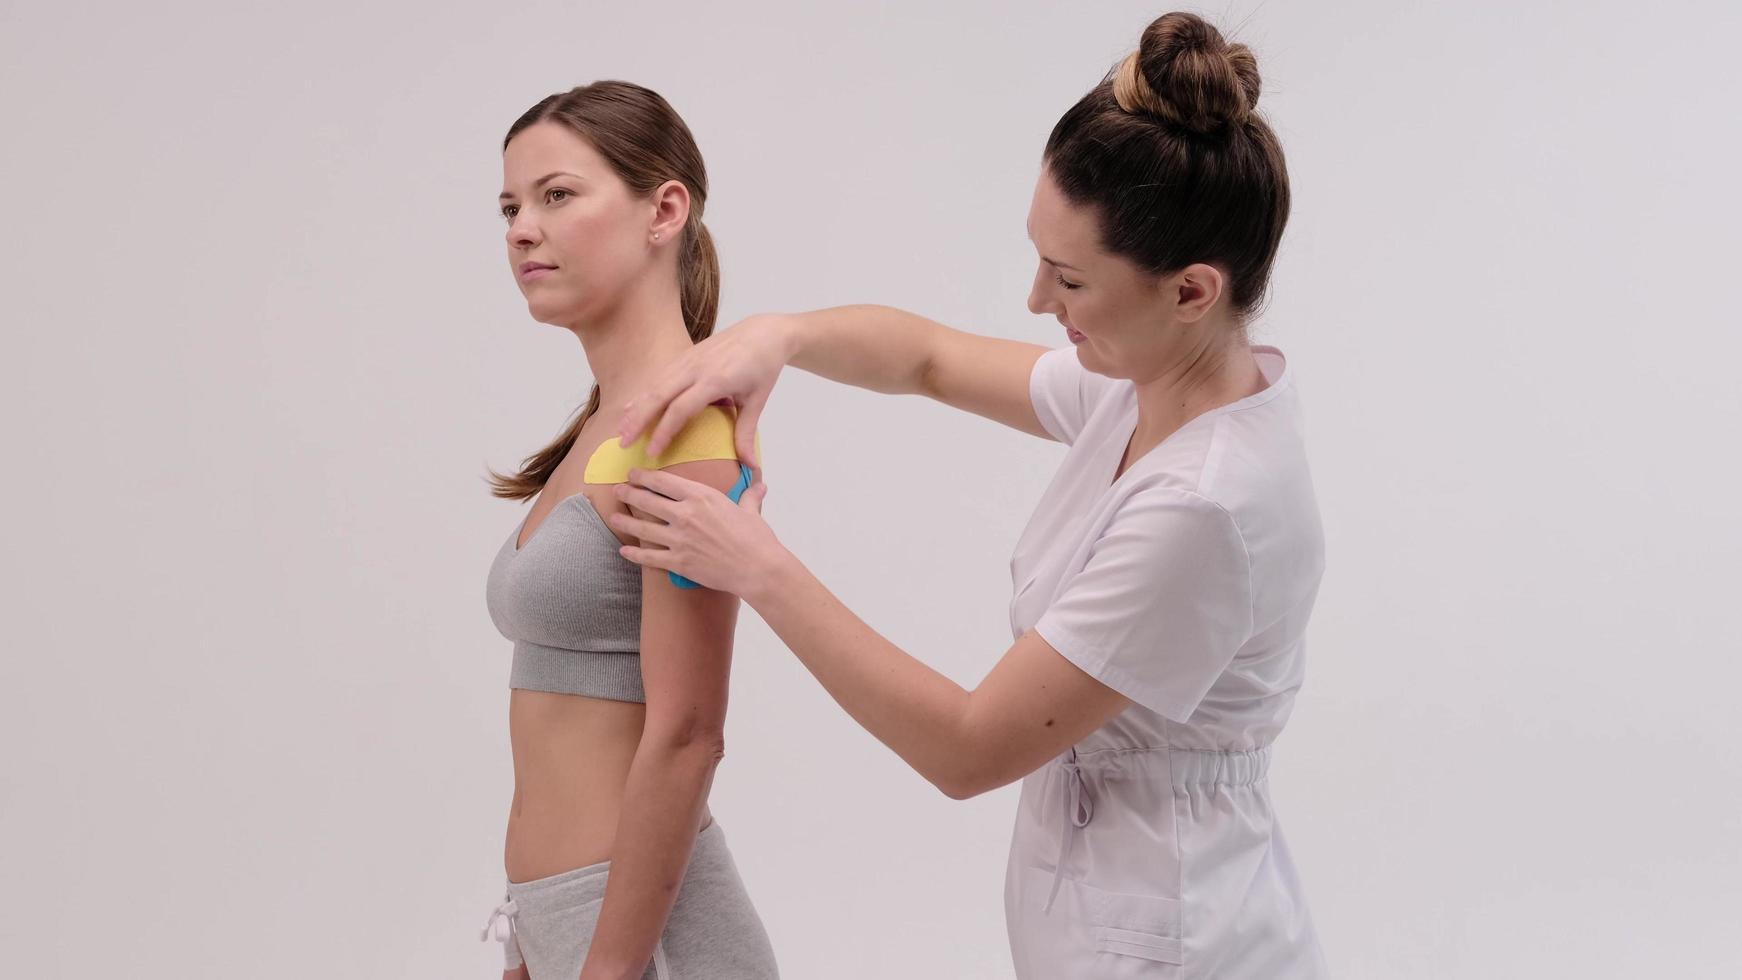 El terapeuta aplica cinta de kinesio al cuerpo femenino. conceptos de fisioterapia y kinesiología. foto